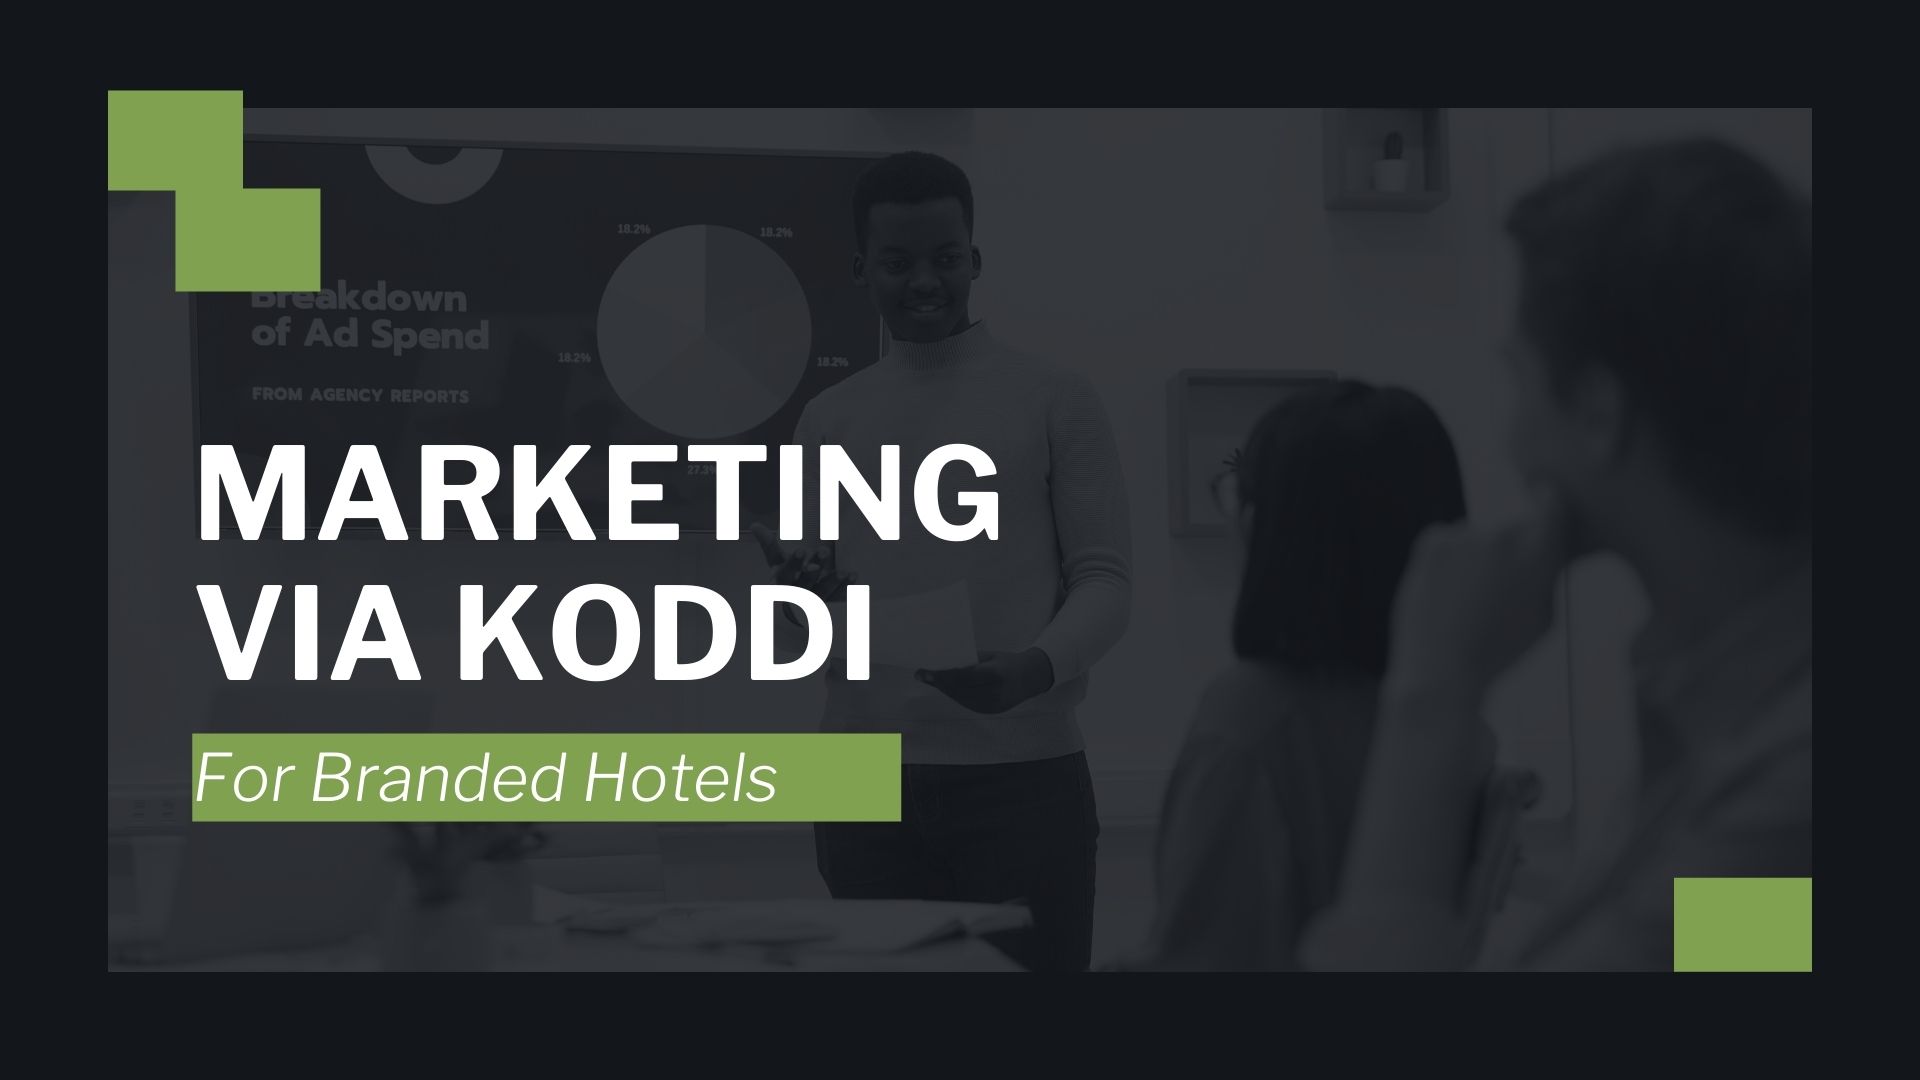 Marketing via Koddi for Branded Hotels